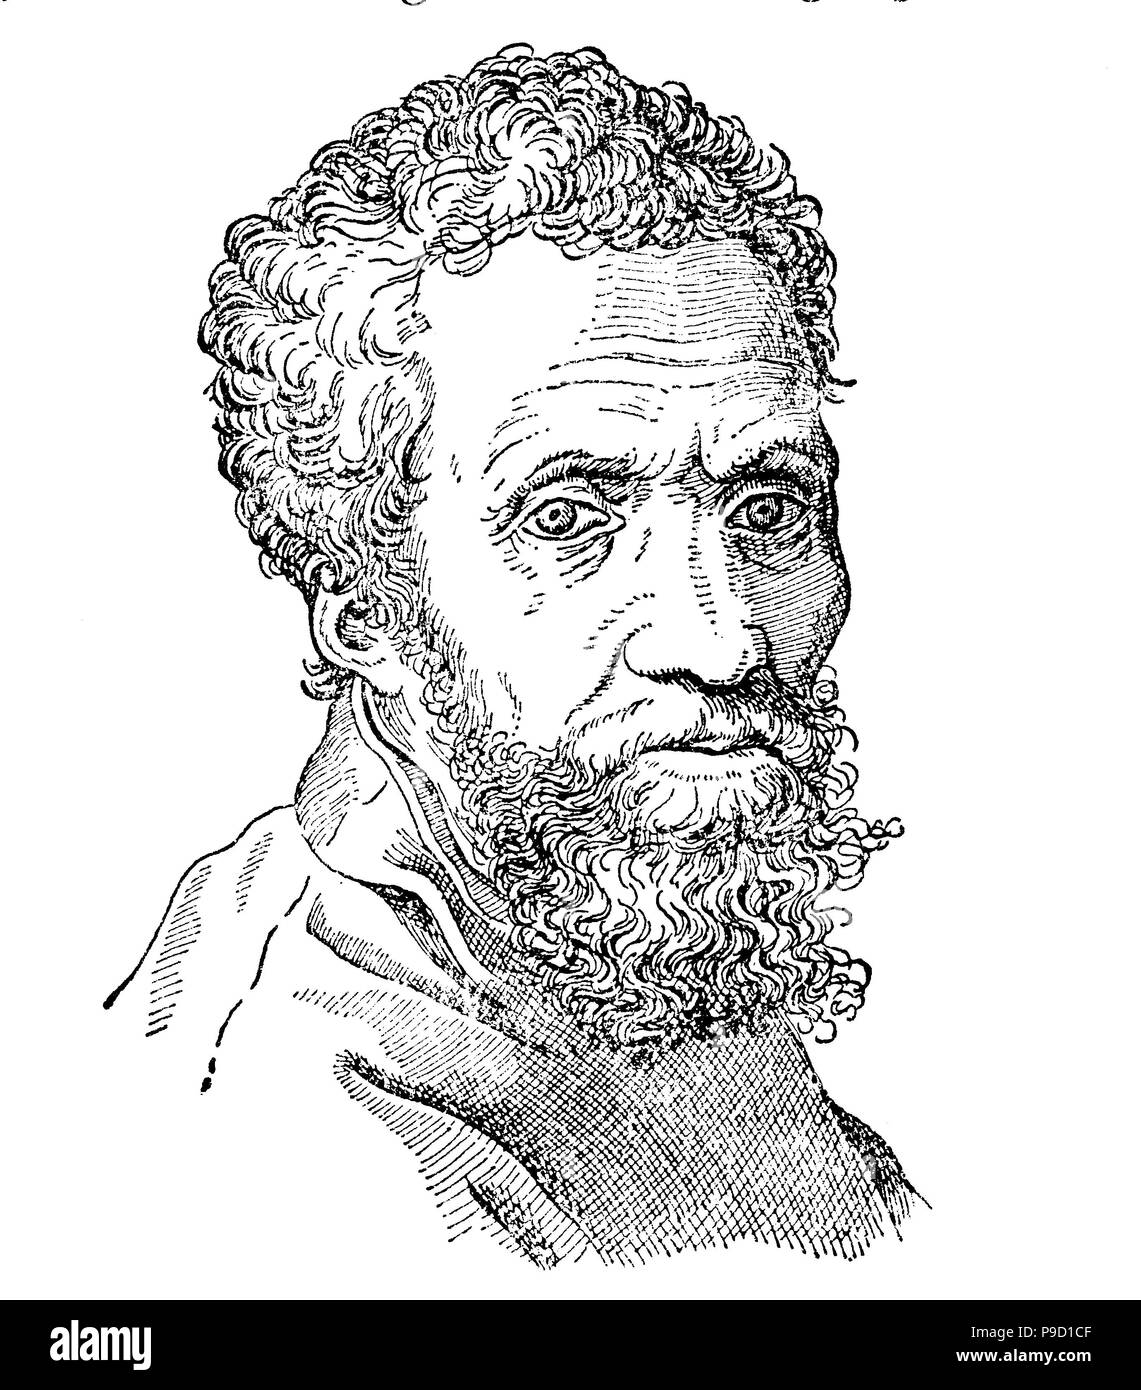 Michelangelo di Lodovico Buonarroti Simoni oder häufiger bekannt durch seinen Vornamen Michelangelo; 6. März 1475 â € "18. Februar 1564 war ein italienischer Bildhauer, Maler, Architekt und Dichter der Renaissance in der Republik Florenz geboren, digital verbesserte Reproduktion einer Vorlage drucken aus dem Jahr 1900 Stockfoto